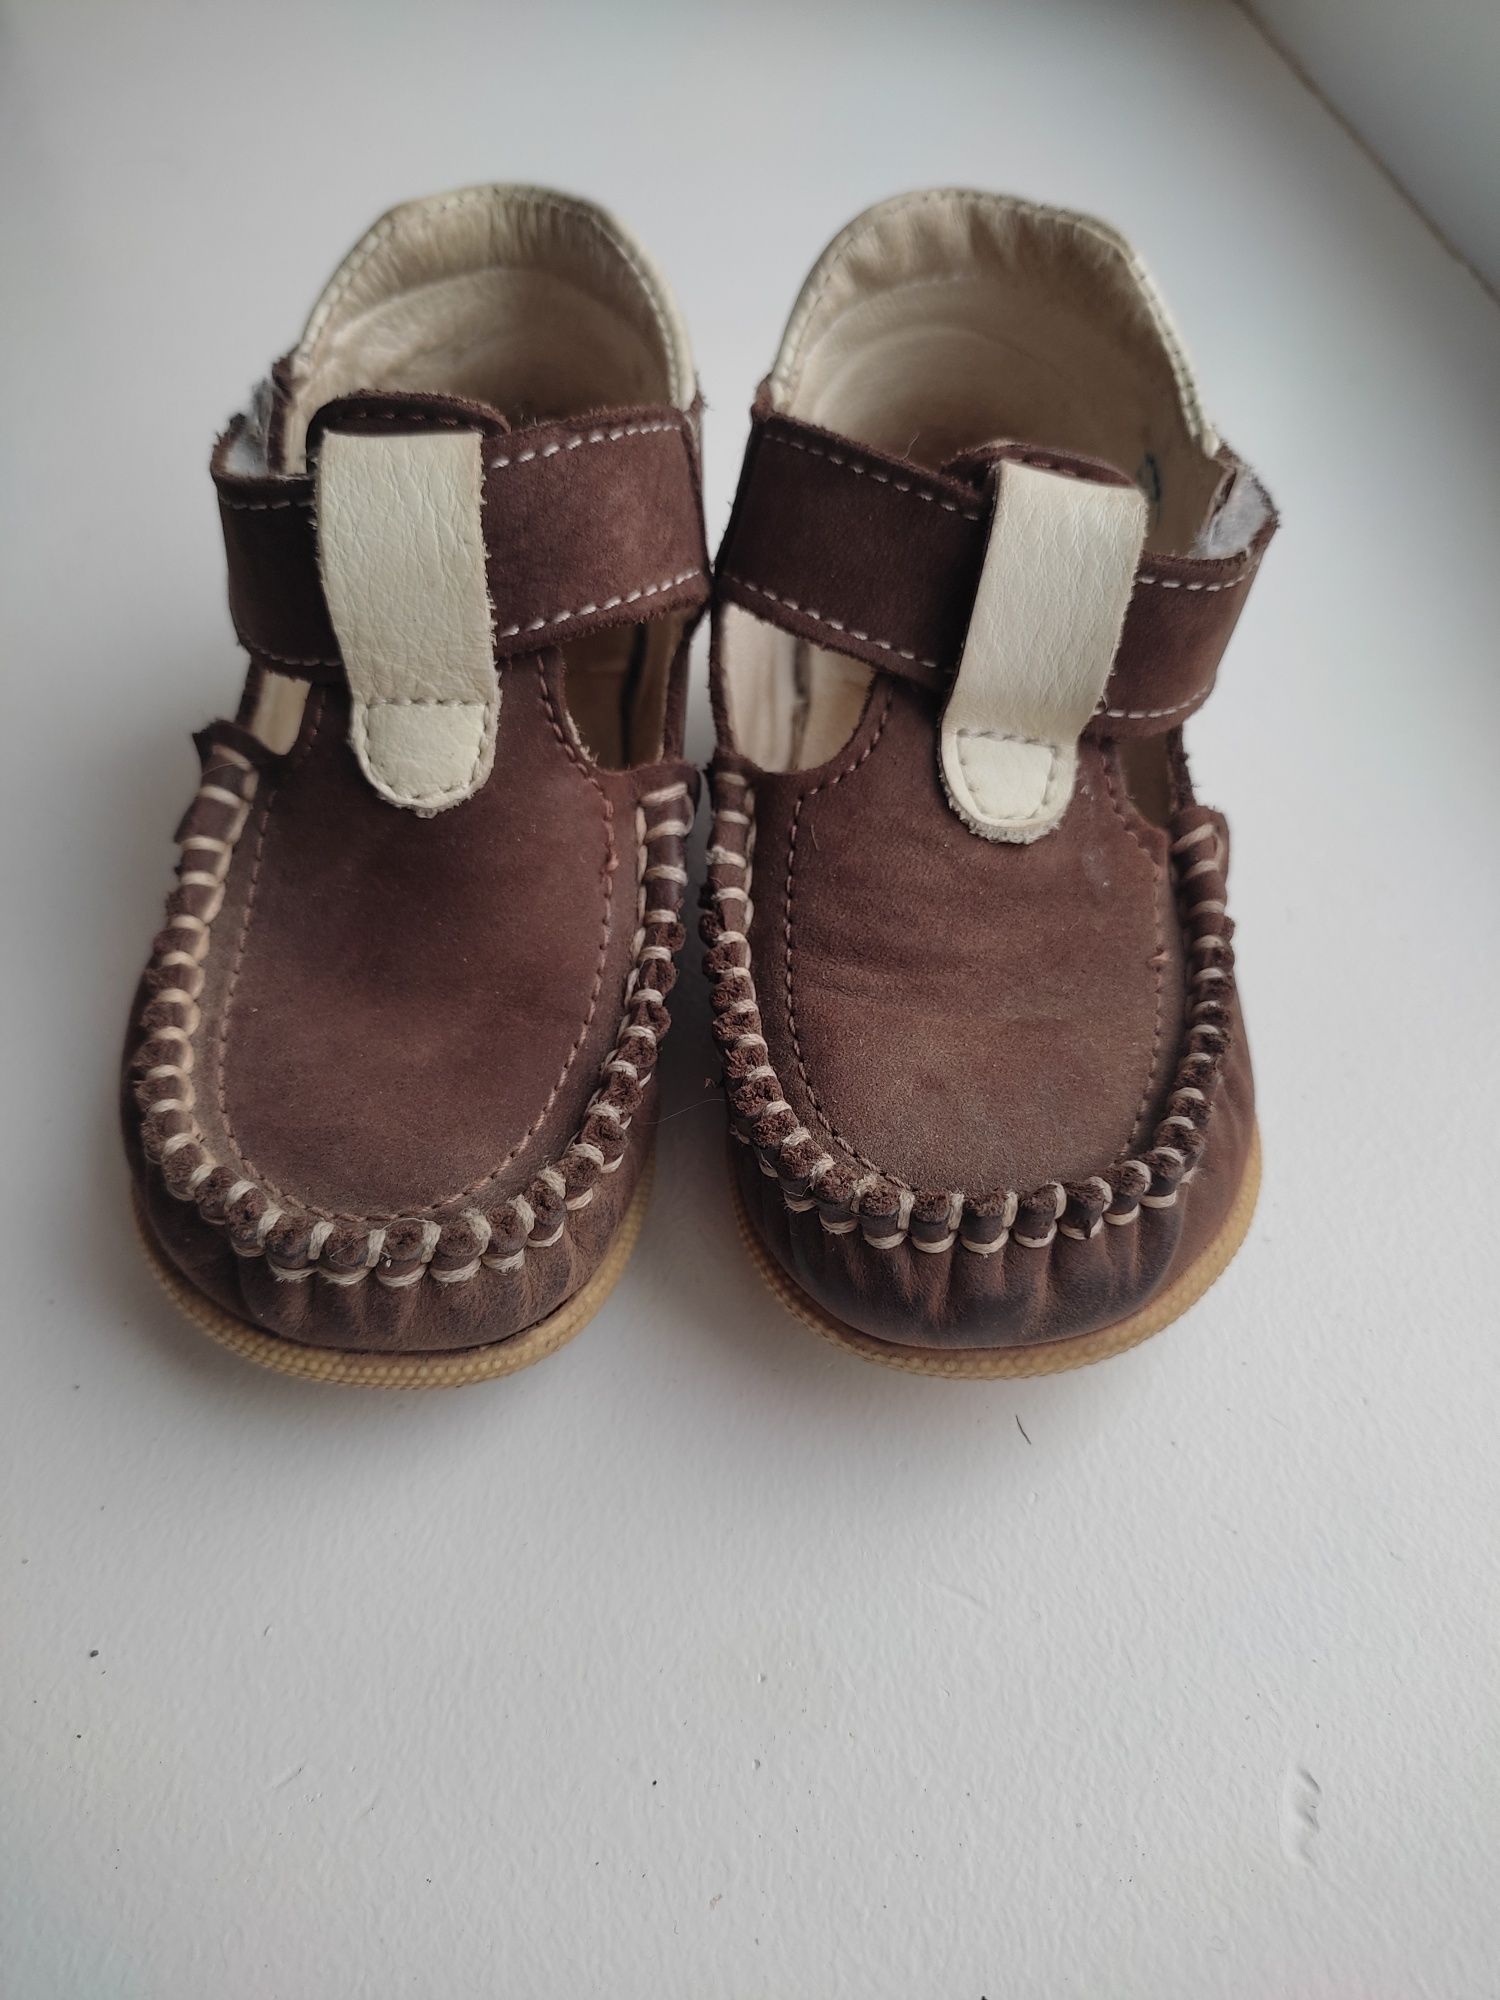 Легкие демисезонные ботинки ТМ "Берегиня" р. 20 (Нубук) для мальчика